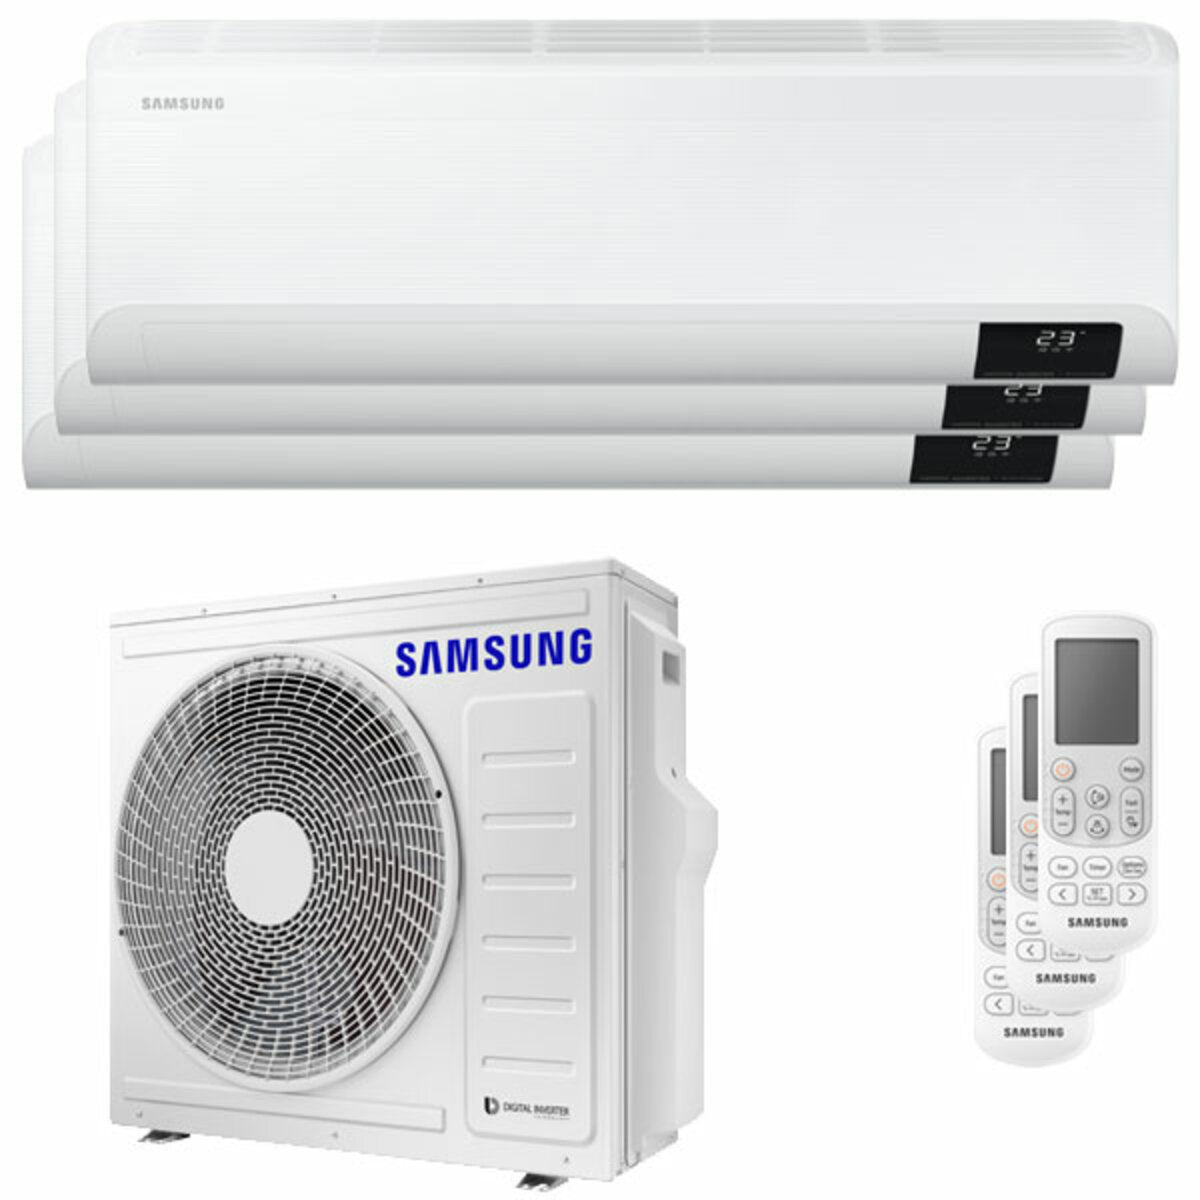 Samsung Cebu Wi-Fi Trial Split Klimaanlage 7000 + 9000 + 12000 BTU Wechselrichter A++ WLAN Außengerät 6,8 kW